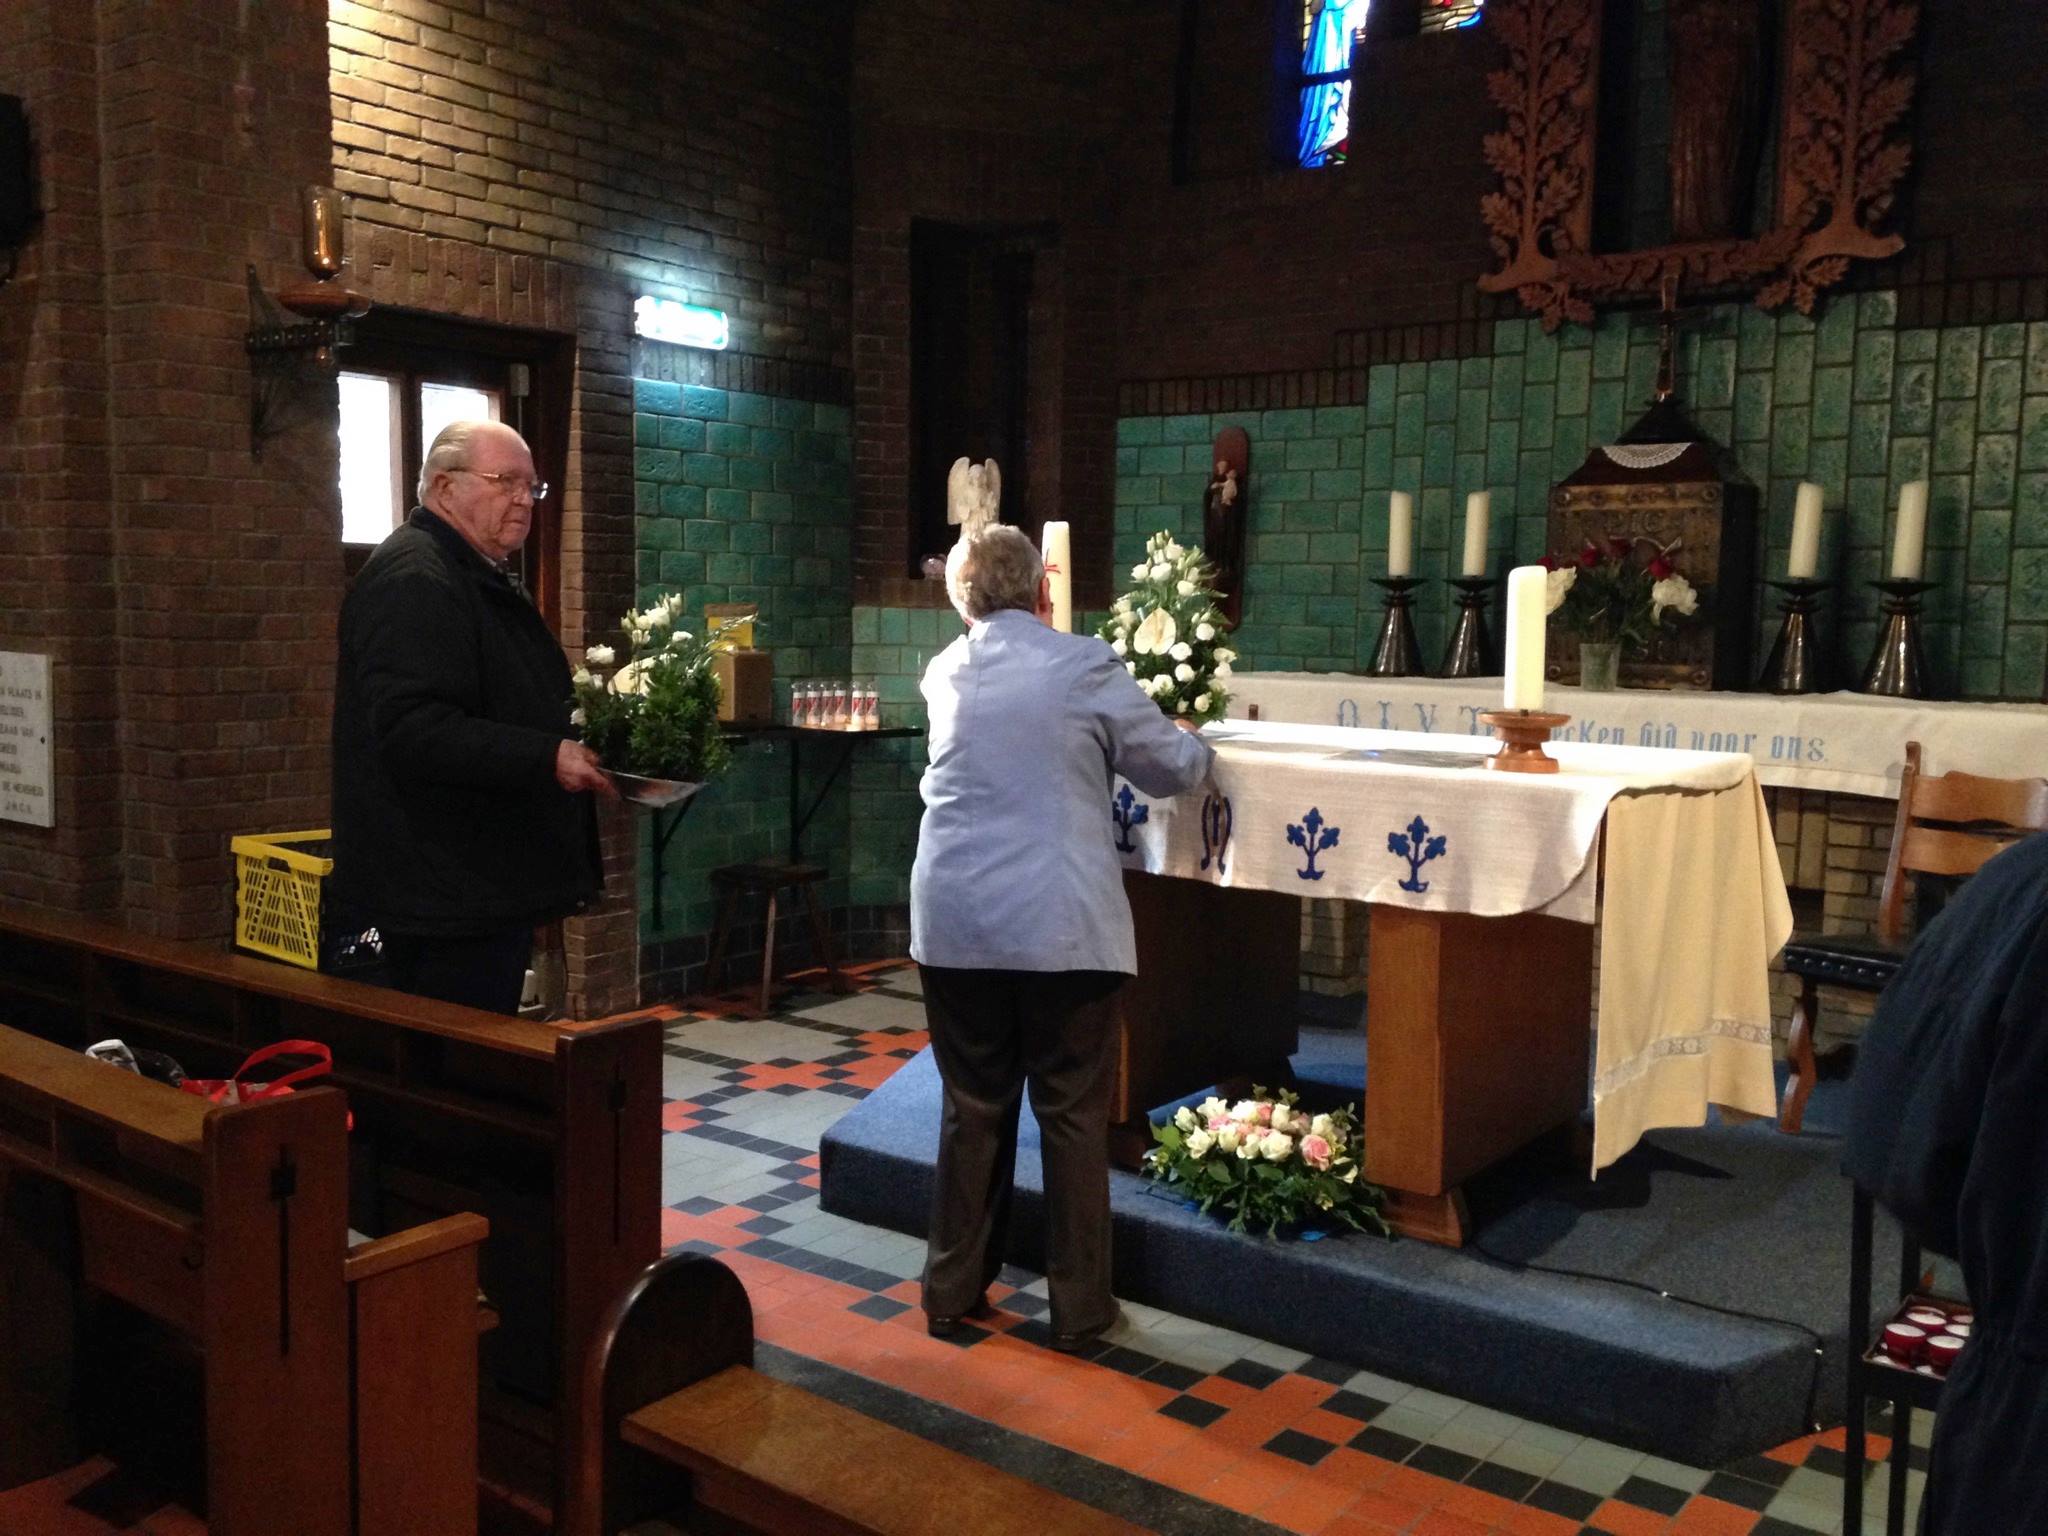 OLV-ter-Eecken-Sacramentsdag-2016-voorbereiding-altaar